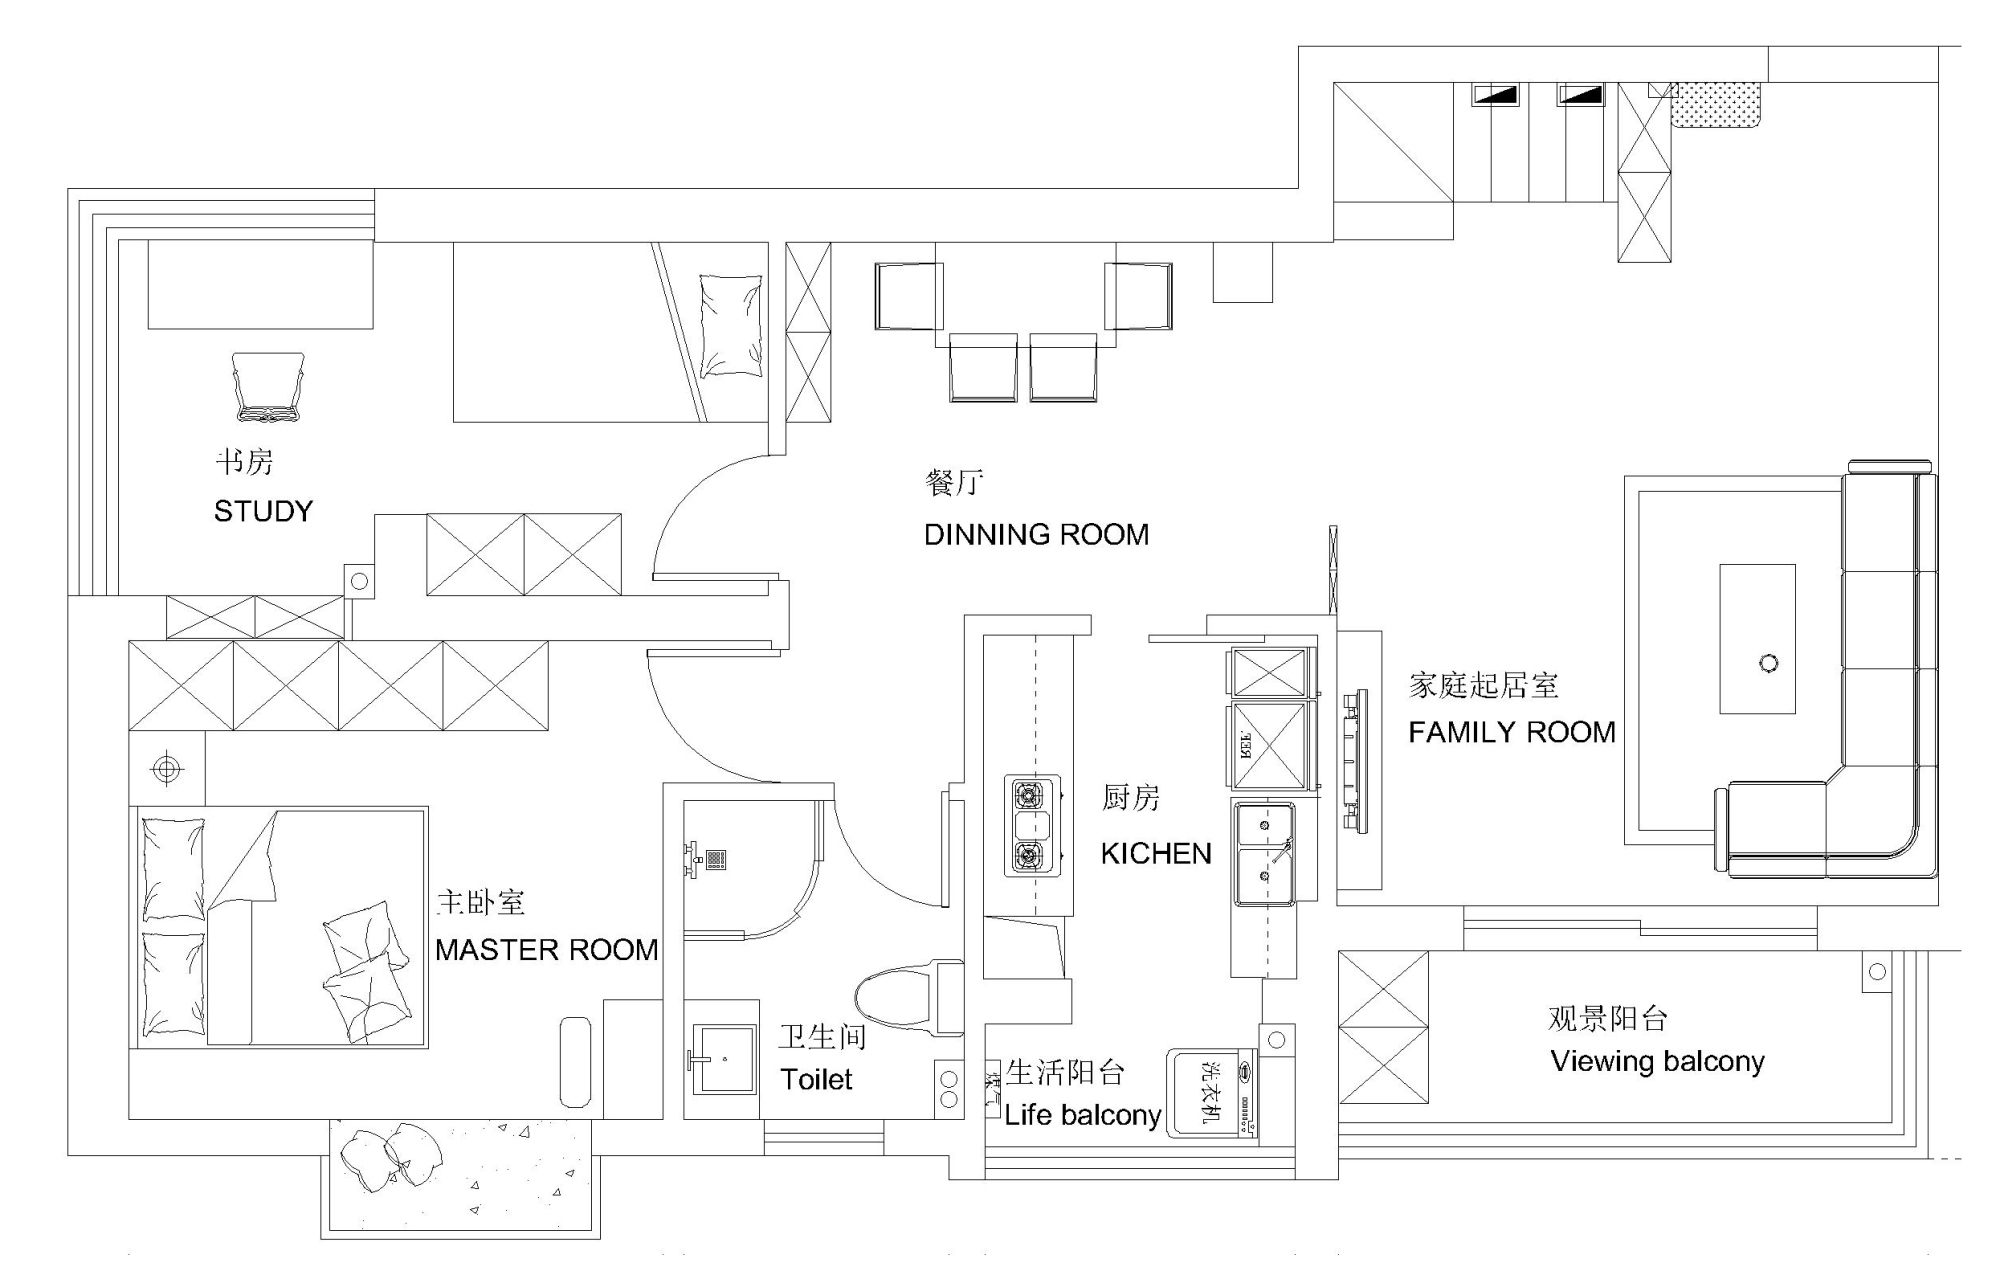 新世界-现代简约-92平米-2居室